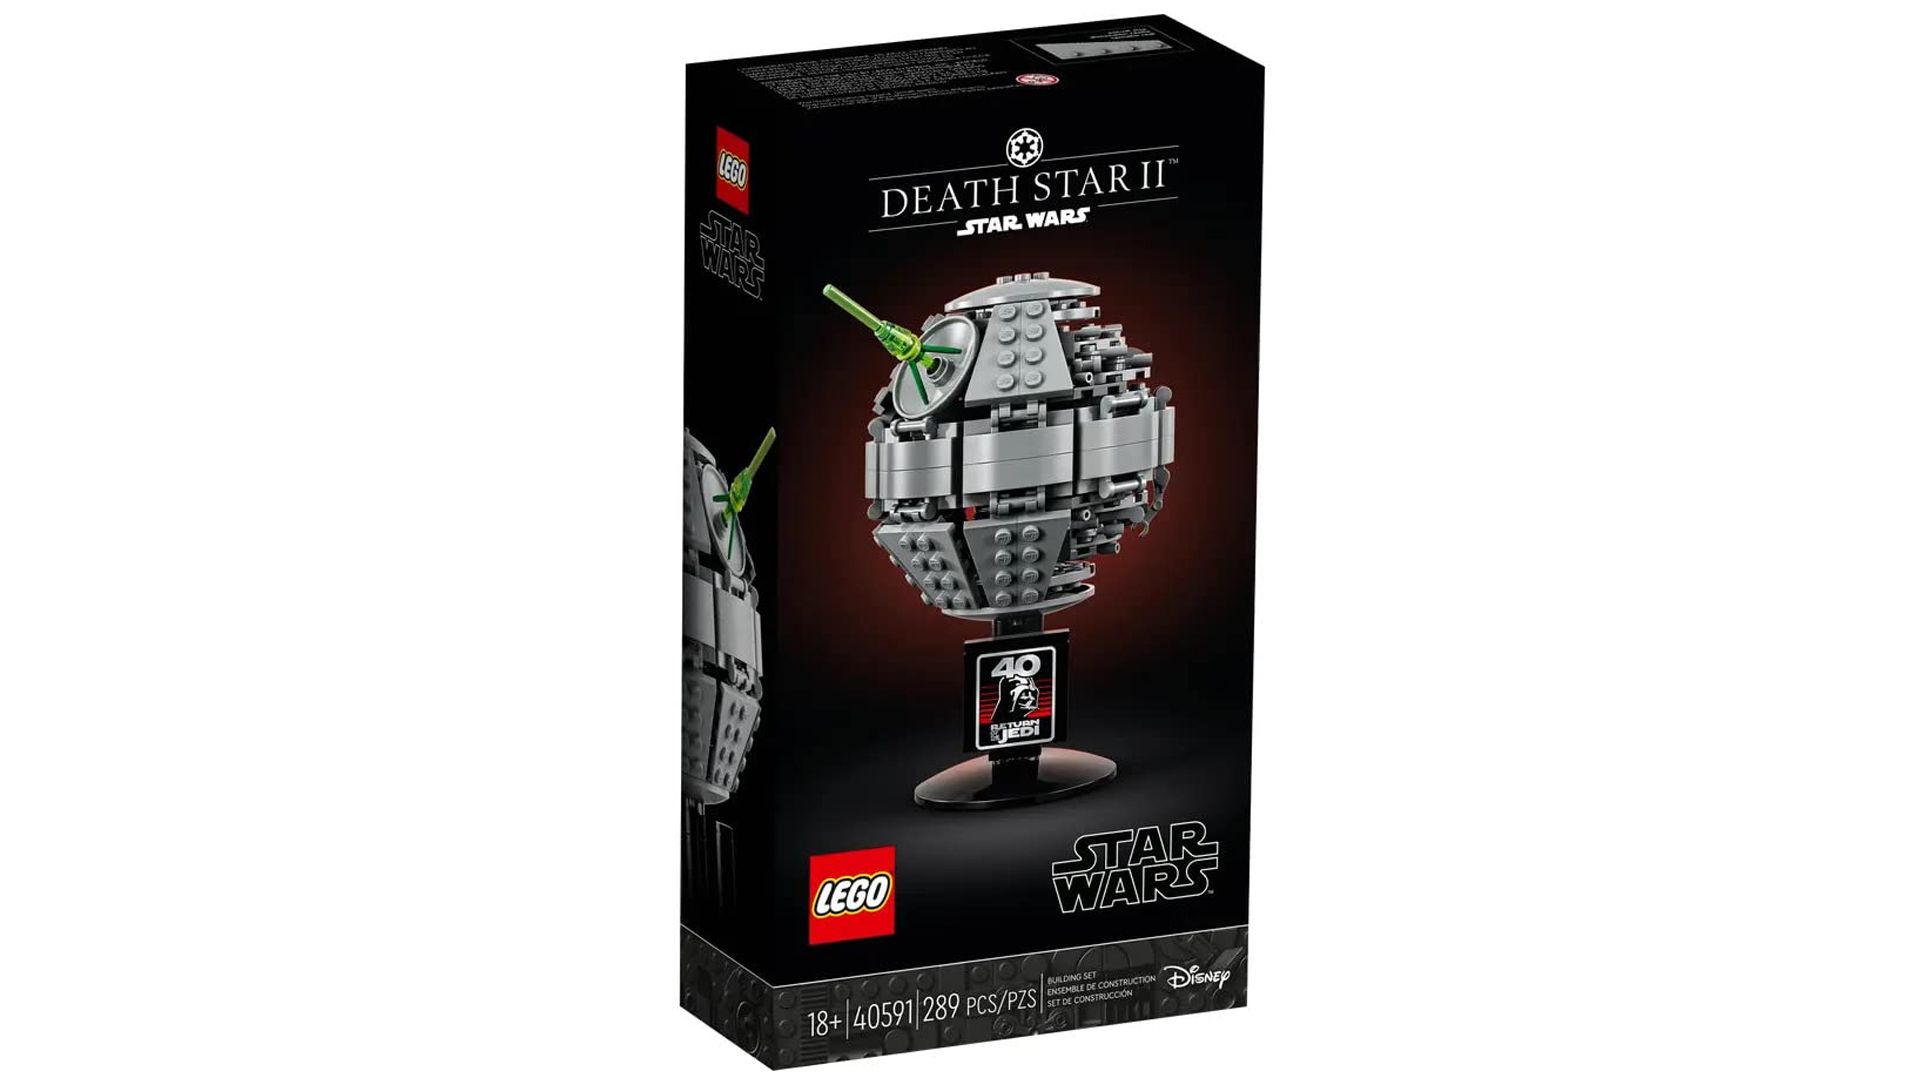 A LEGO box shows the Death Star II set.